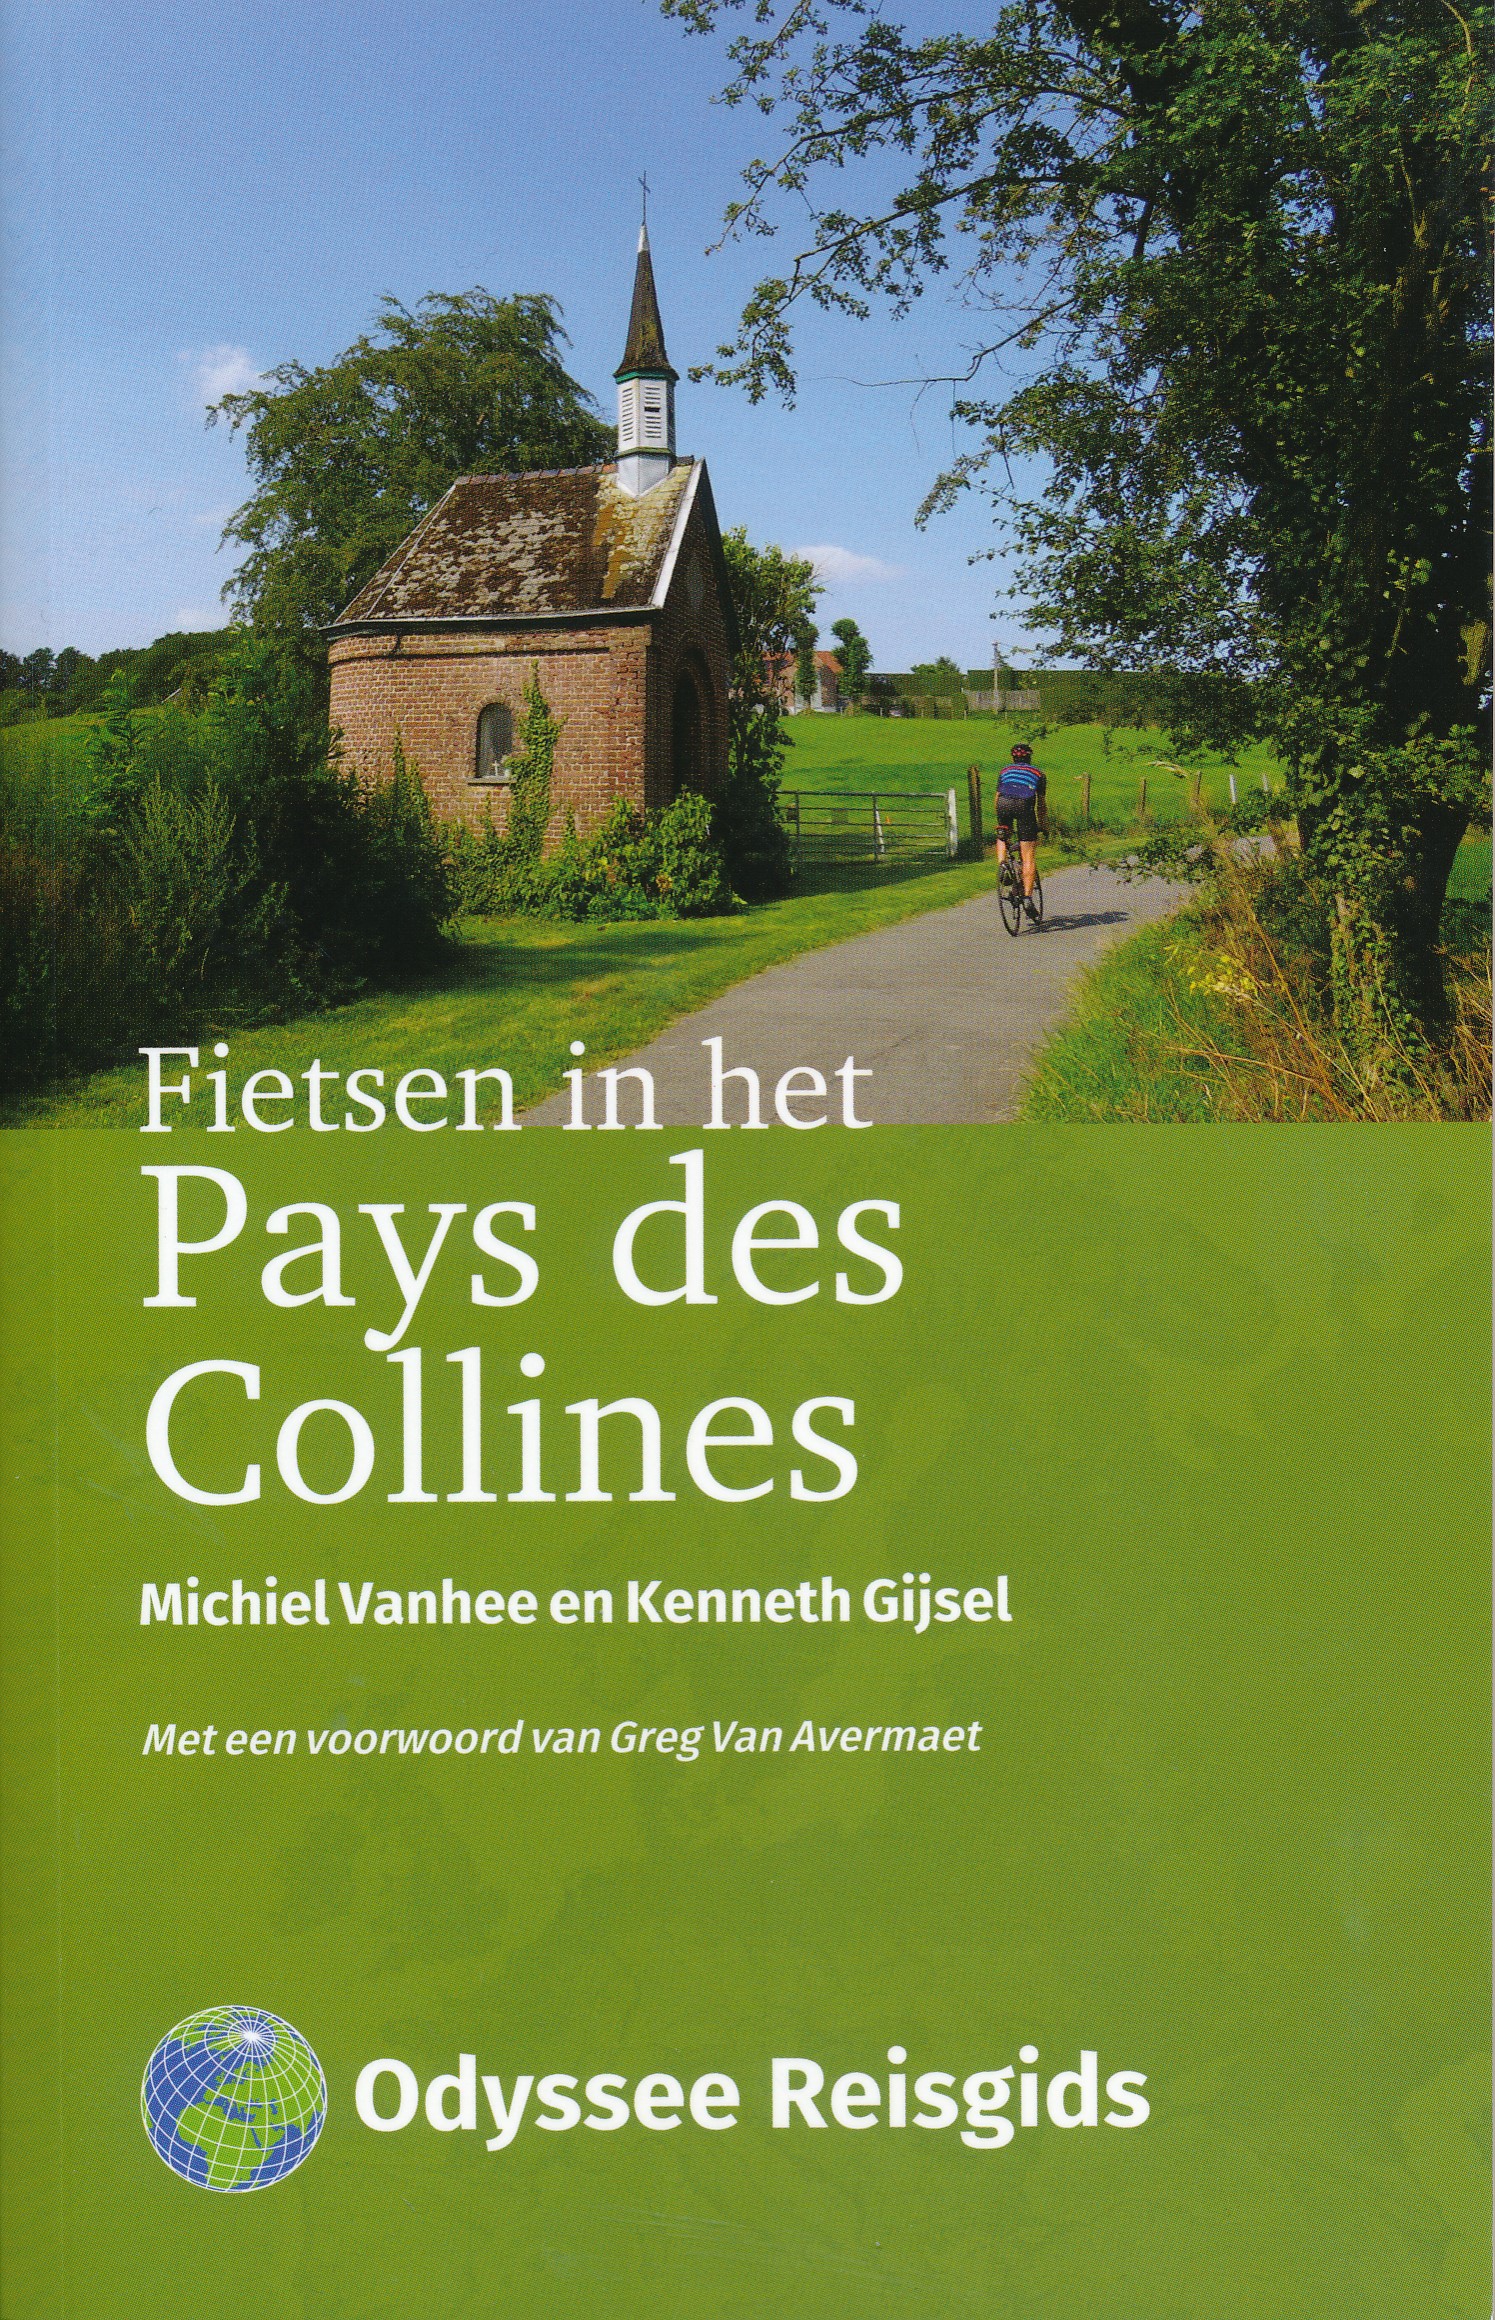 Online bestellen: Fietsgids - Reisgids Fietsen in het Pays des Collines | Odyssee Reisgidsen